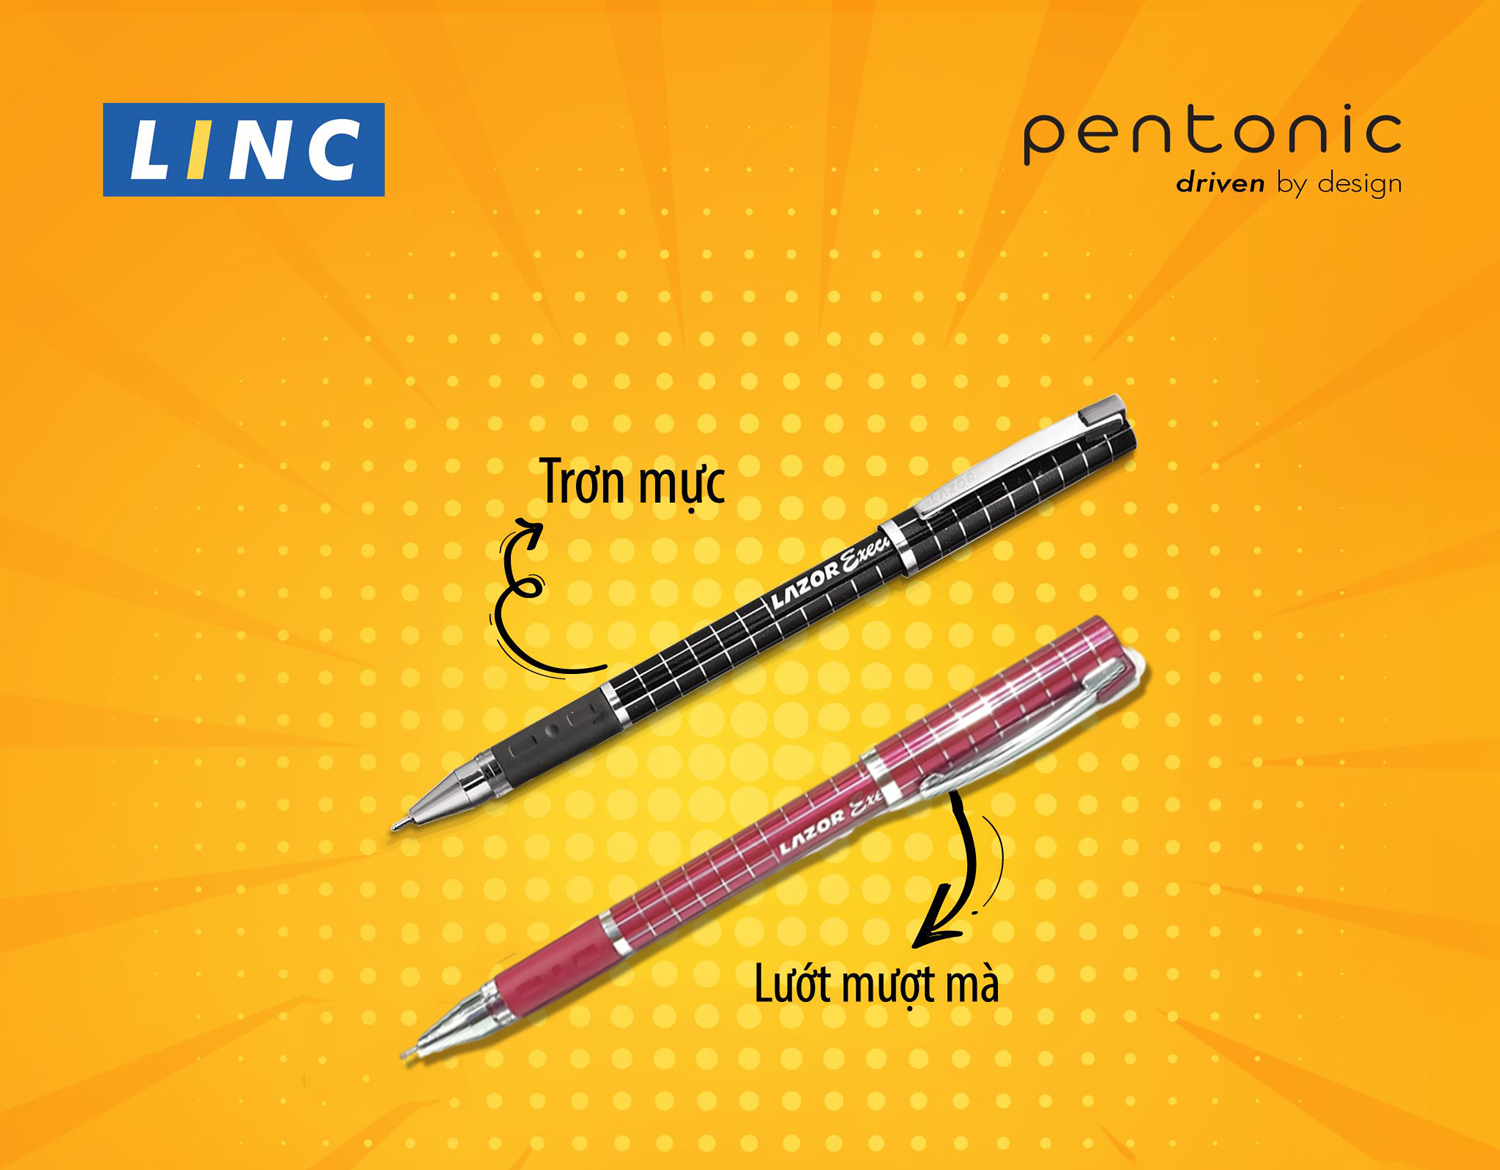 Kinh nghiệm chọn màu mực bút bi theo từng nhu cầu sử dụng